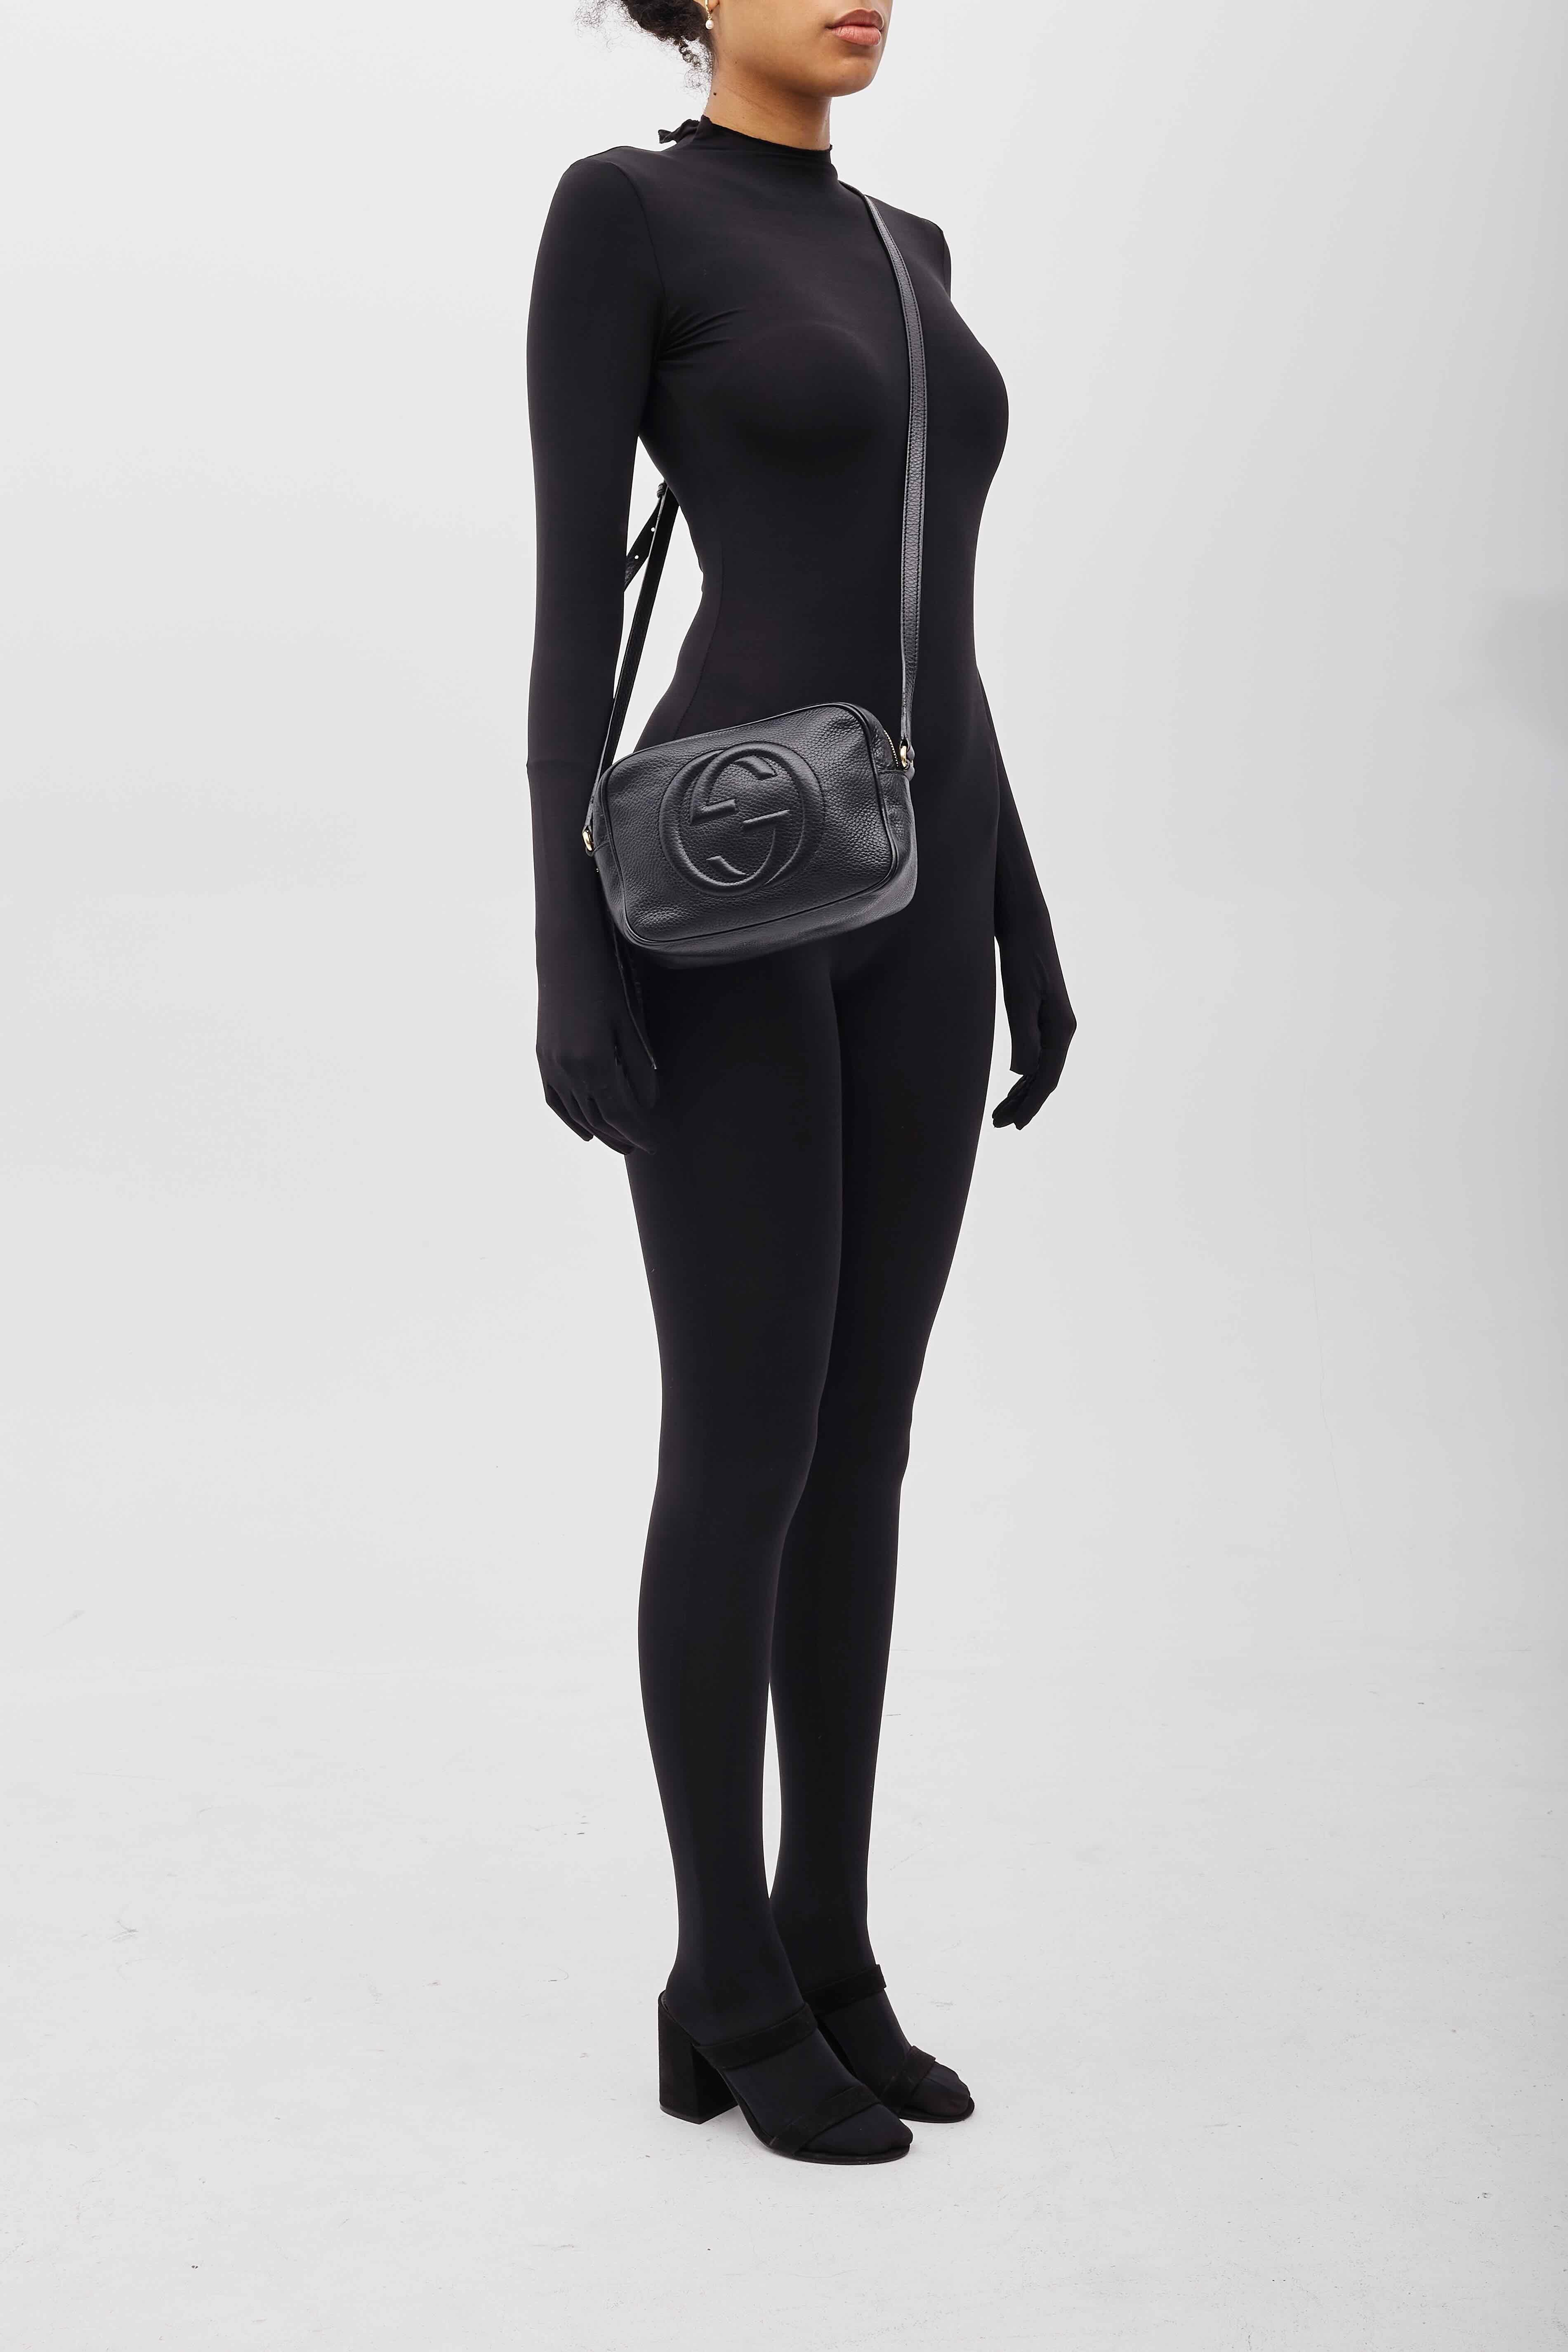 Gucci Soho Disco Black Leather Shoulder Bag For Sale 5